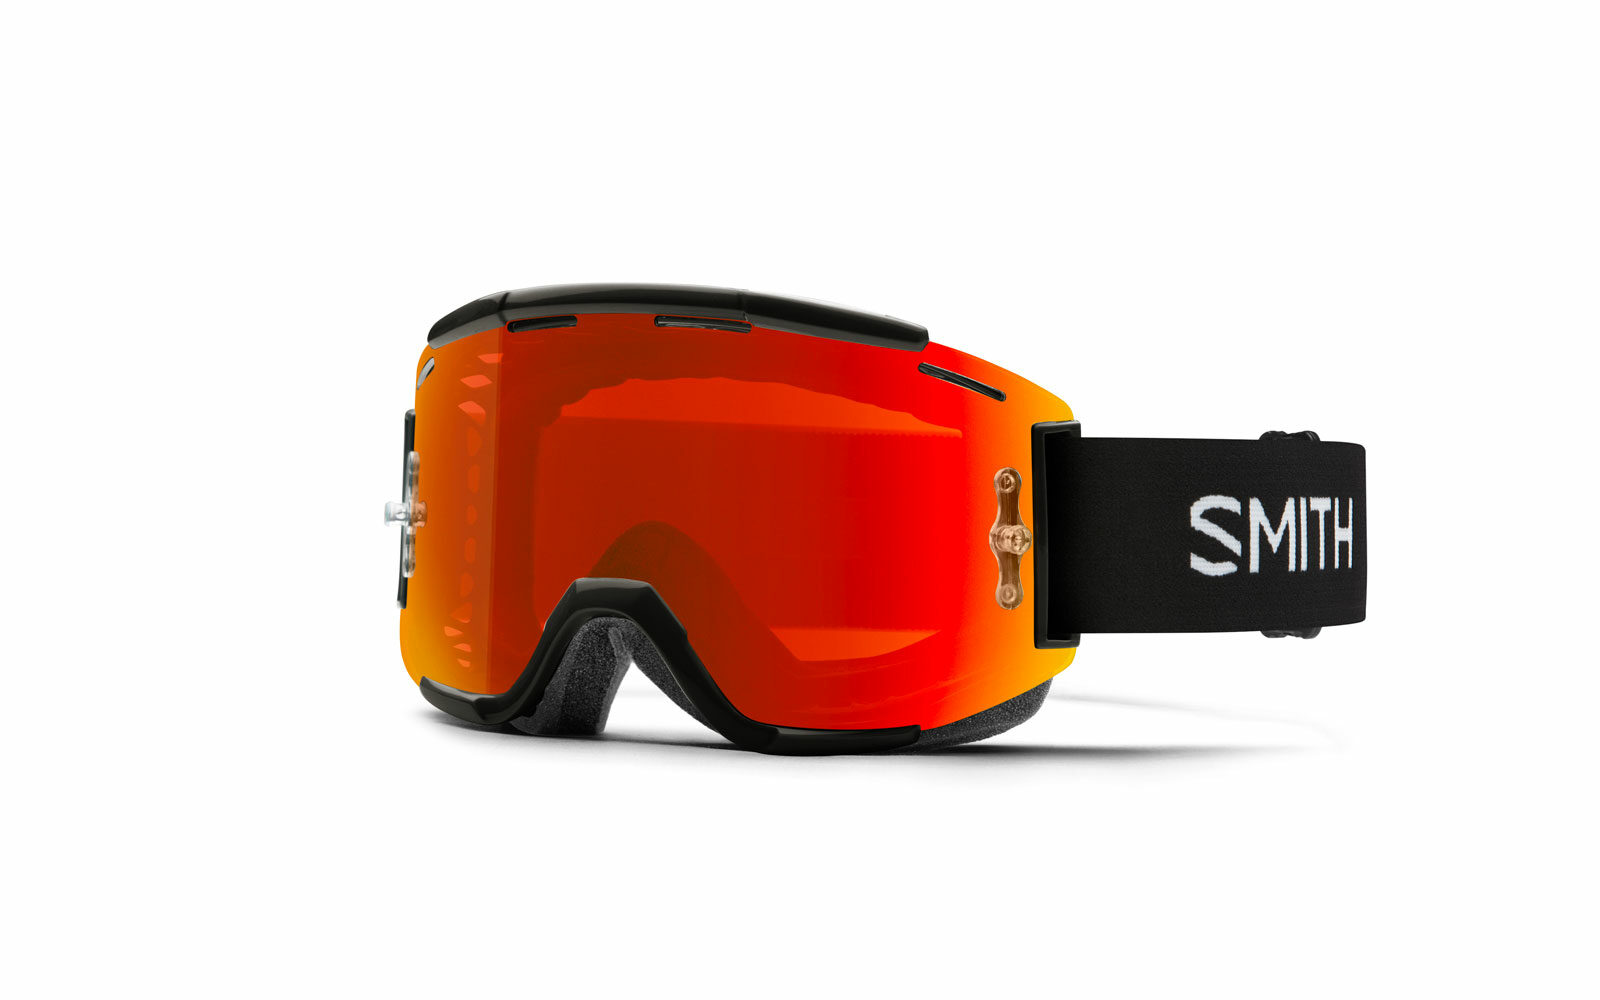 Maschera Smith Squad MTB, perfetta per la MOUNTAIN BIKE, ampio campo visivo, protezione da UV e da polvere o sassolini sollevati dal sentiero, lente specchiata ultraresistente, molto ventilata. Euro 100.